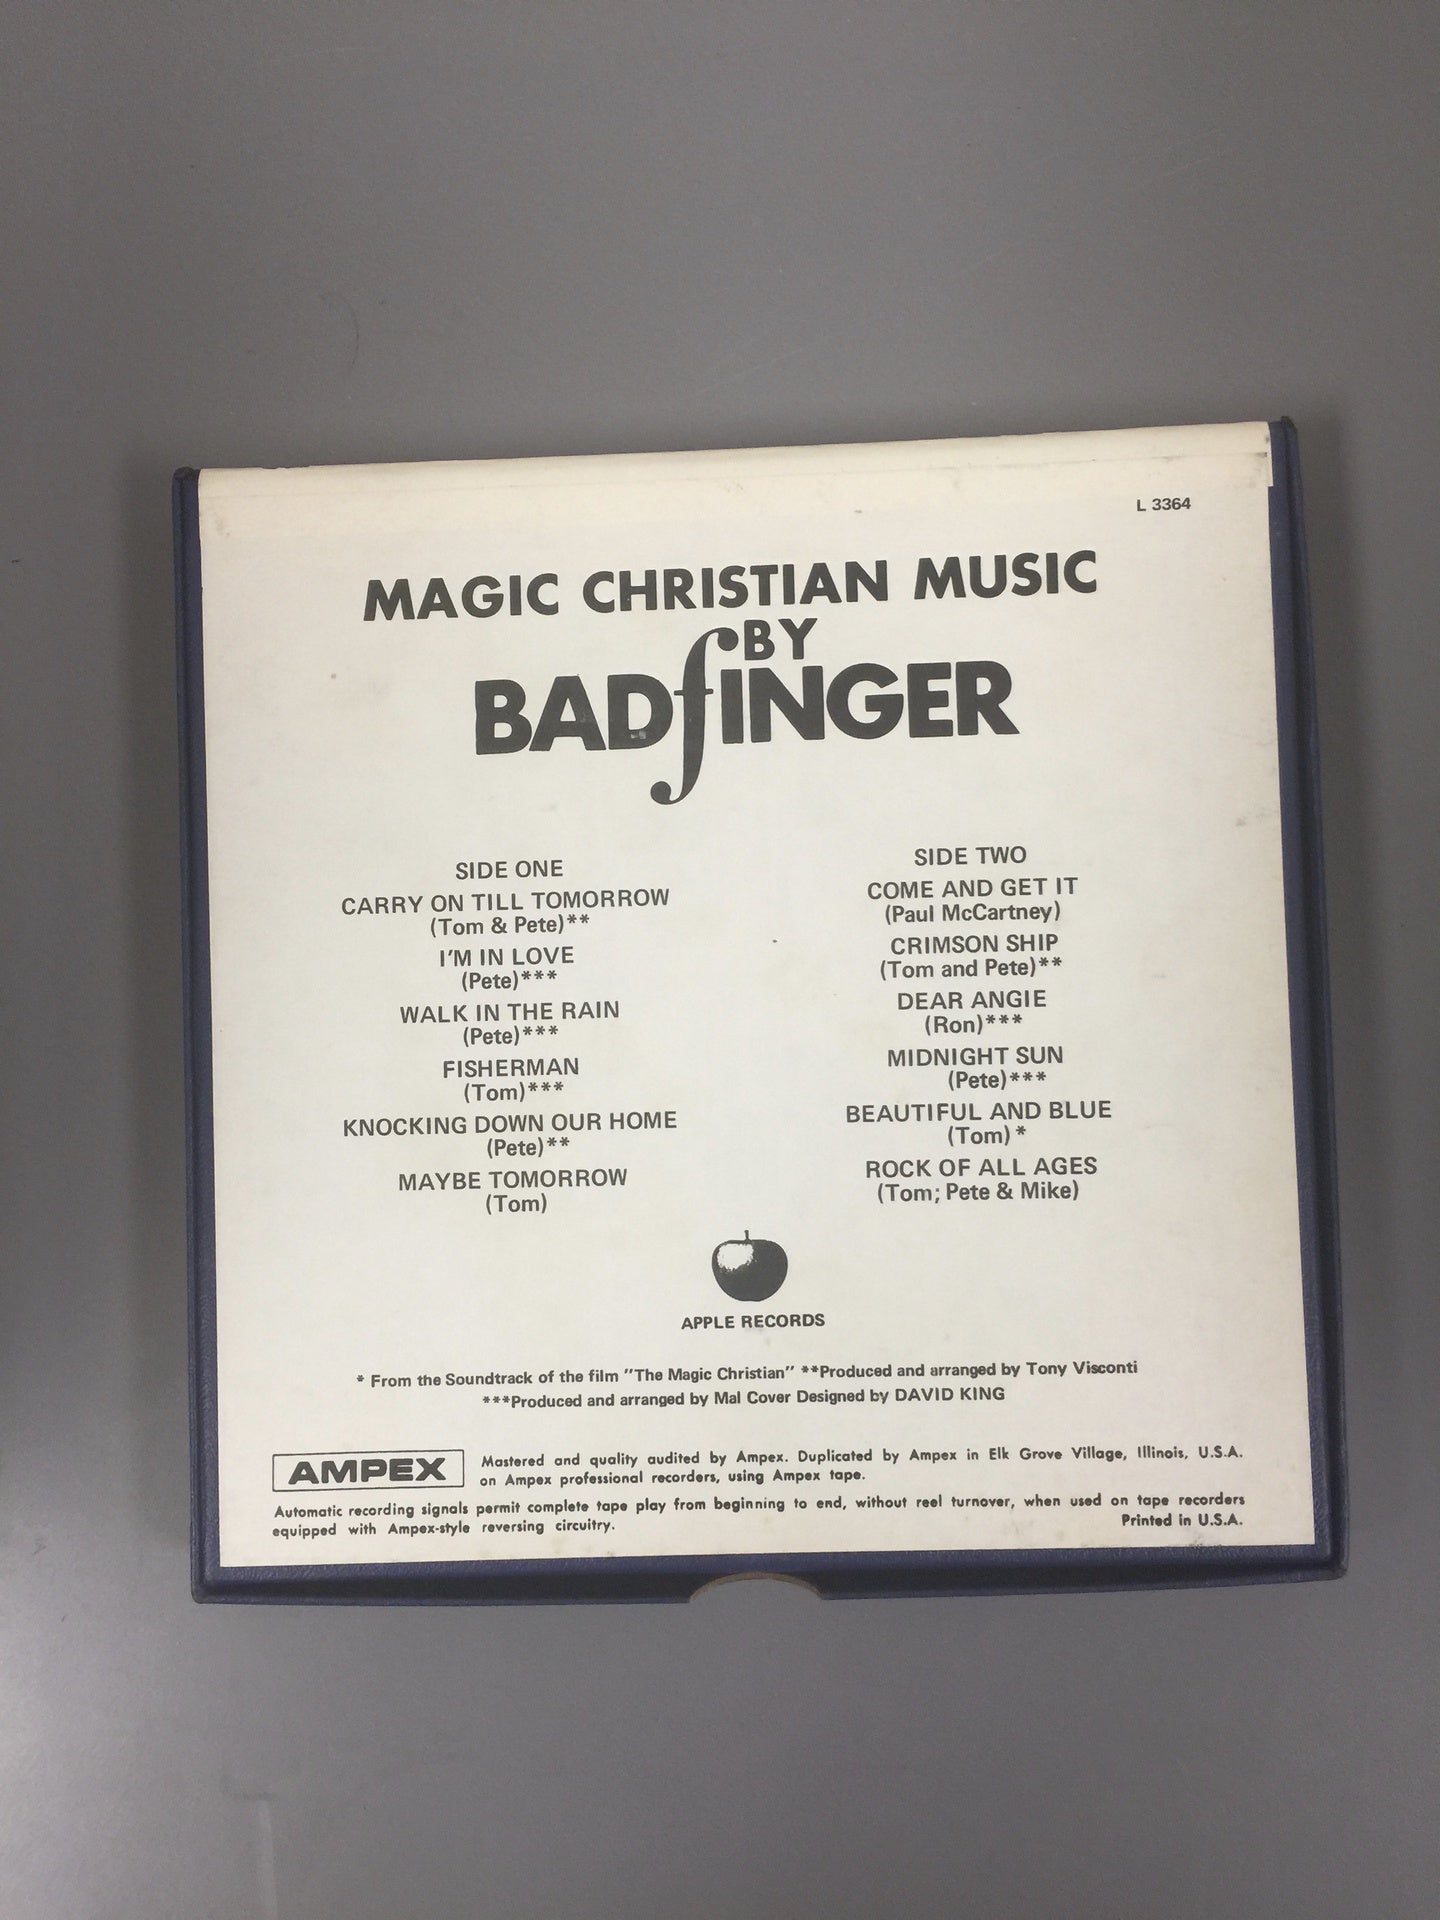 Badfinger – Magic Christian Music (reel tape)